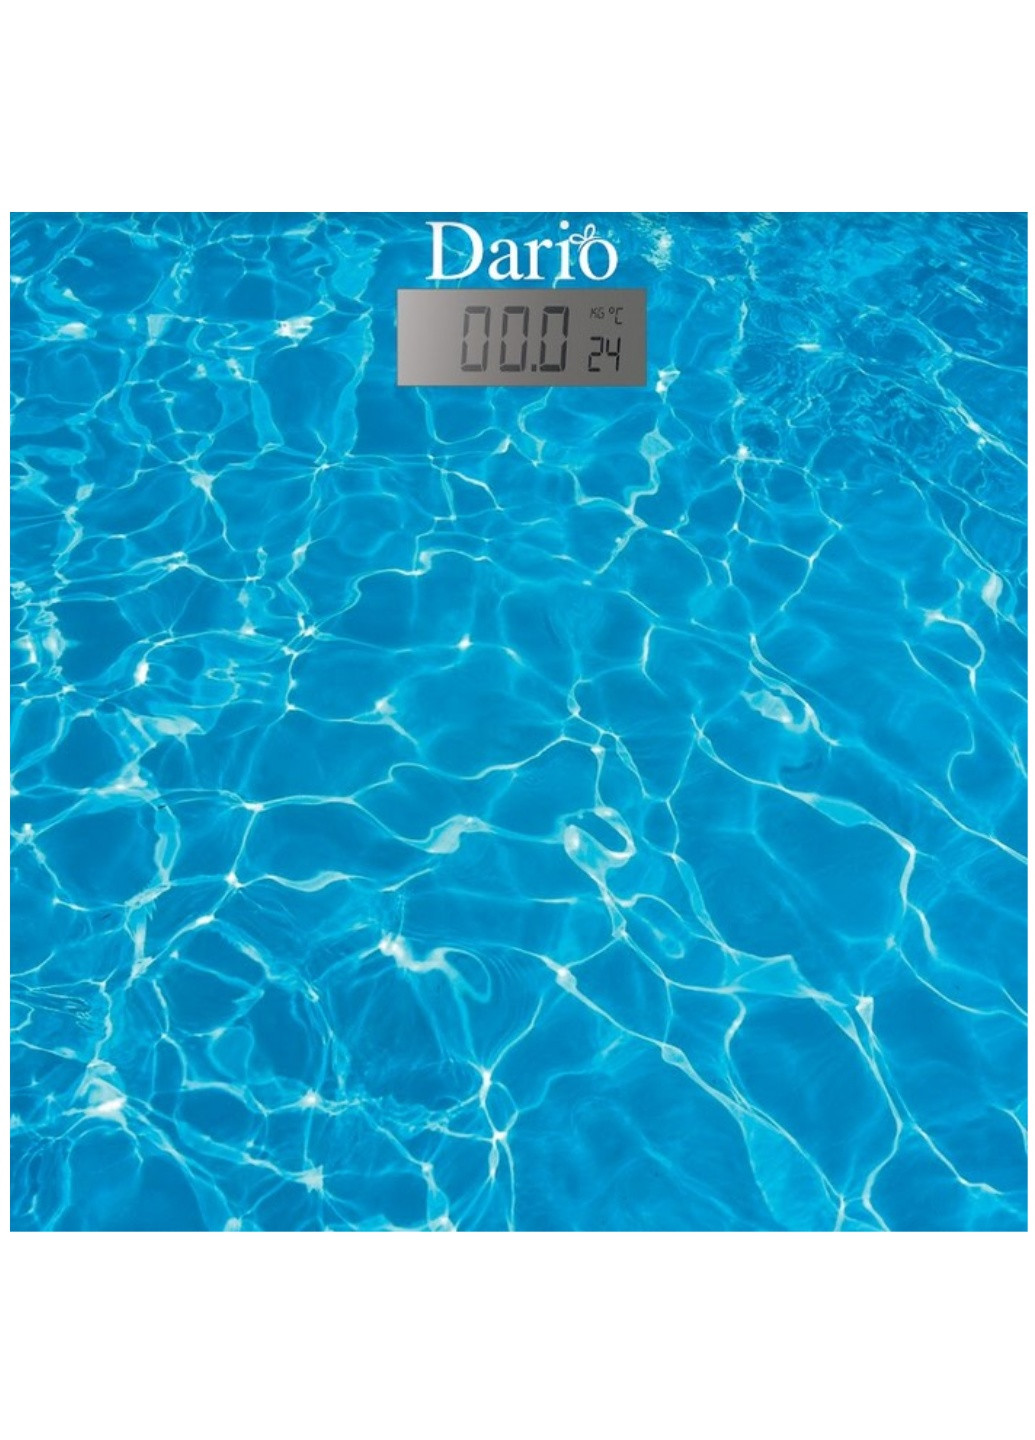 Ваги підлогові електронні Dario DFS-181 Water сині